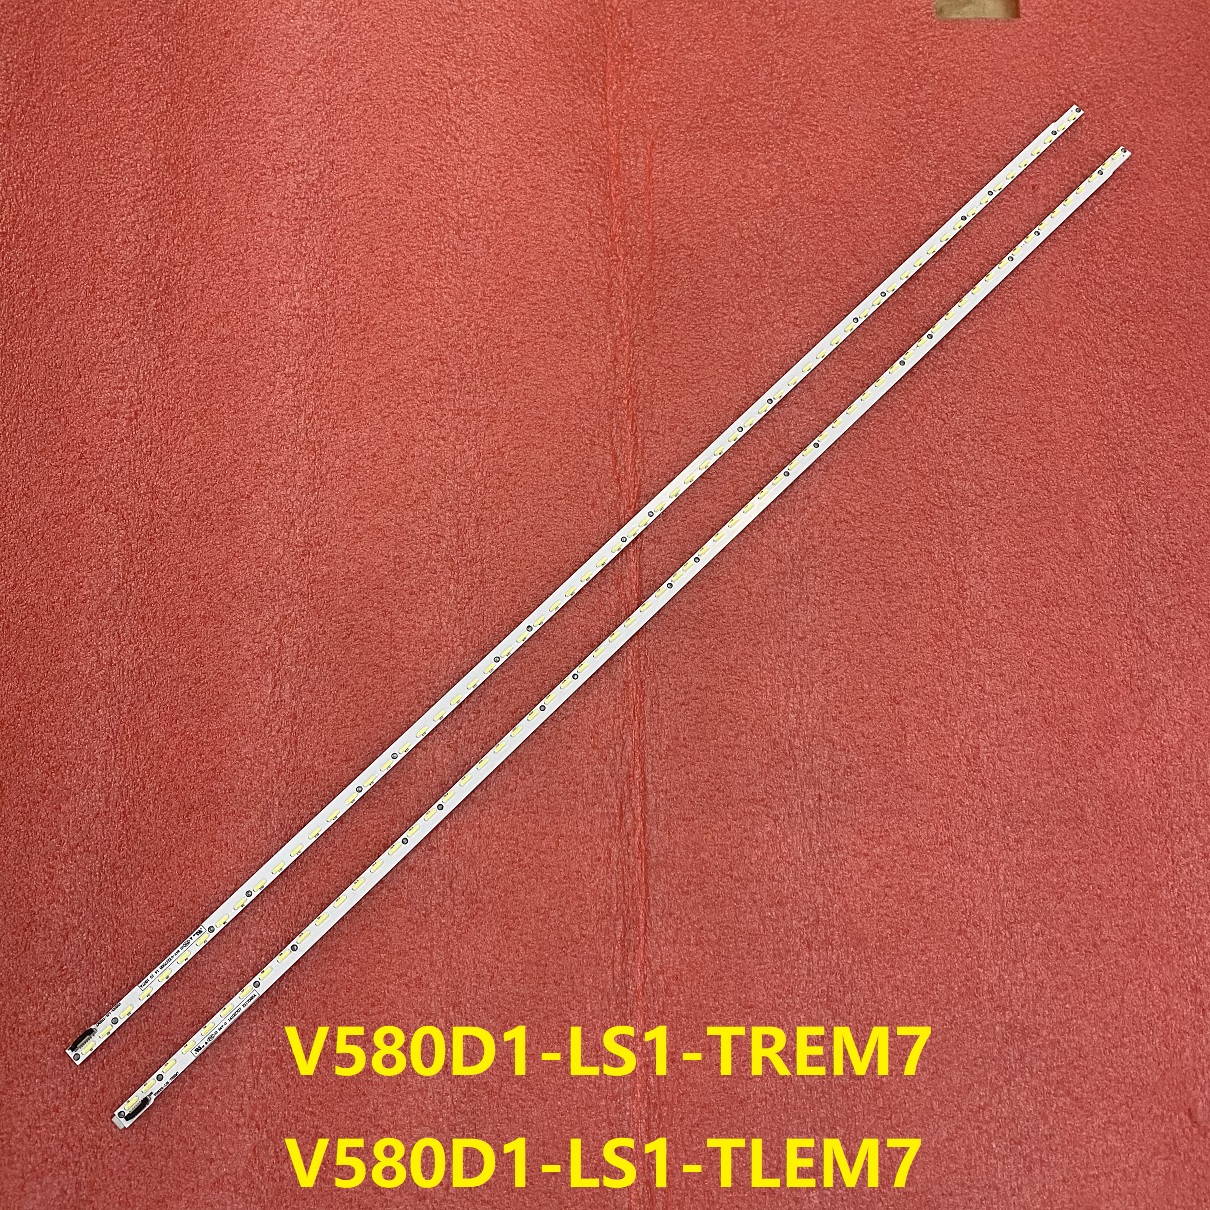 58E690U V580D1-LS1-TREM7 V580D1-LS1-TLEM7 V580DK2-KS1 2pcs/set